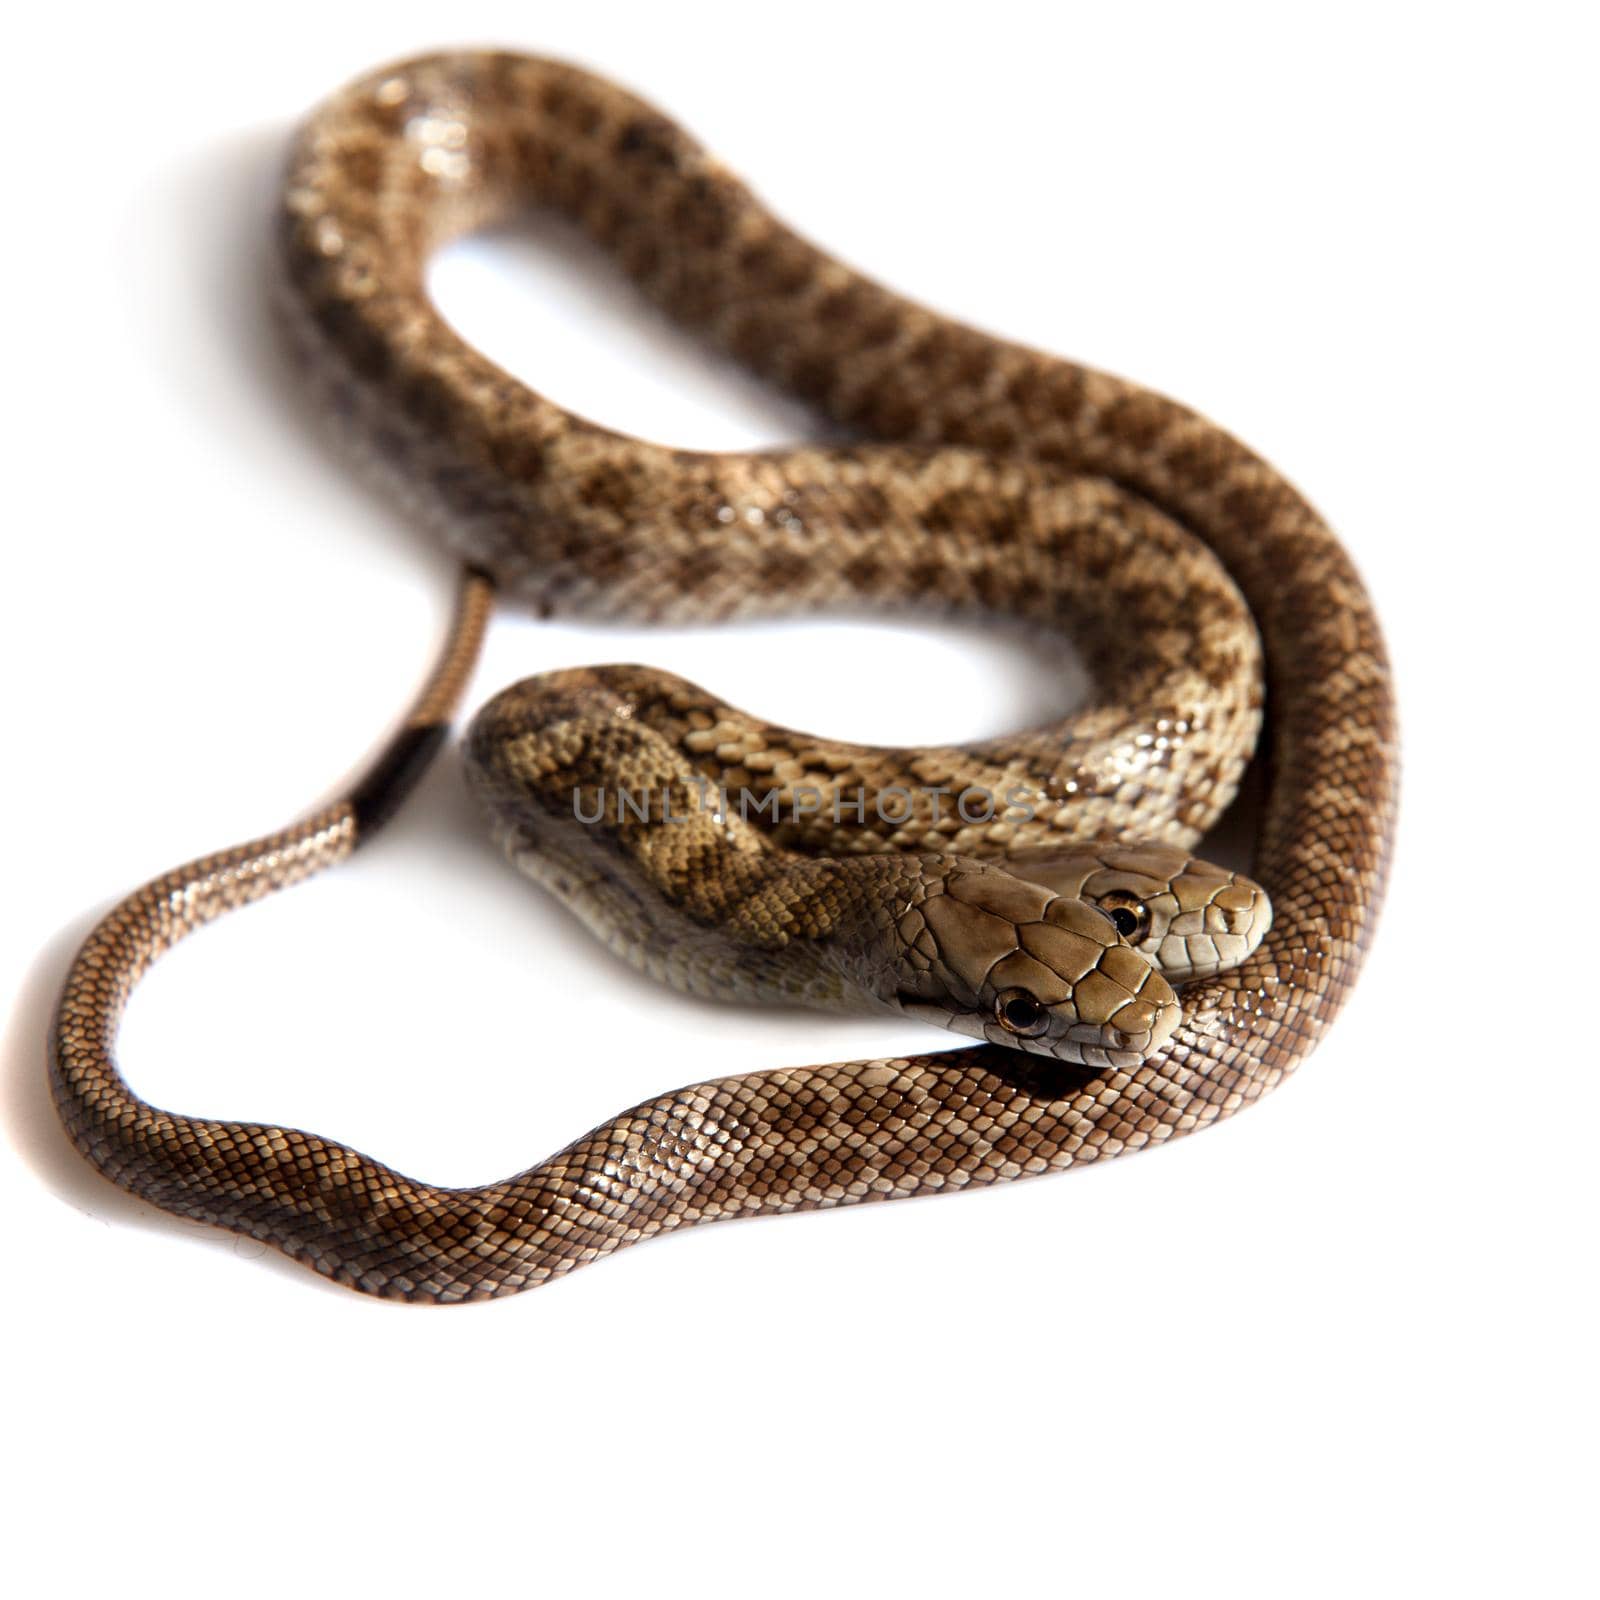 The two headed Japanese rat snake, Elaphe climacophora, isolated on white background